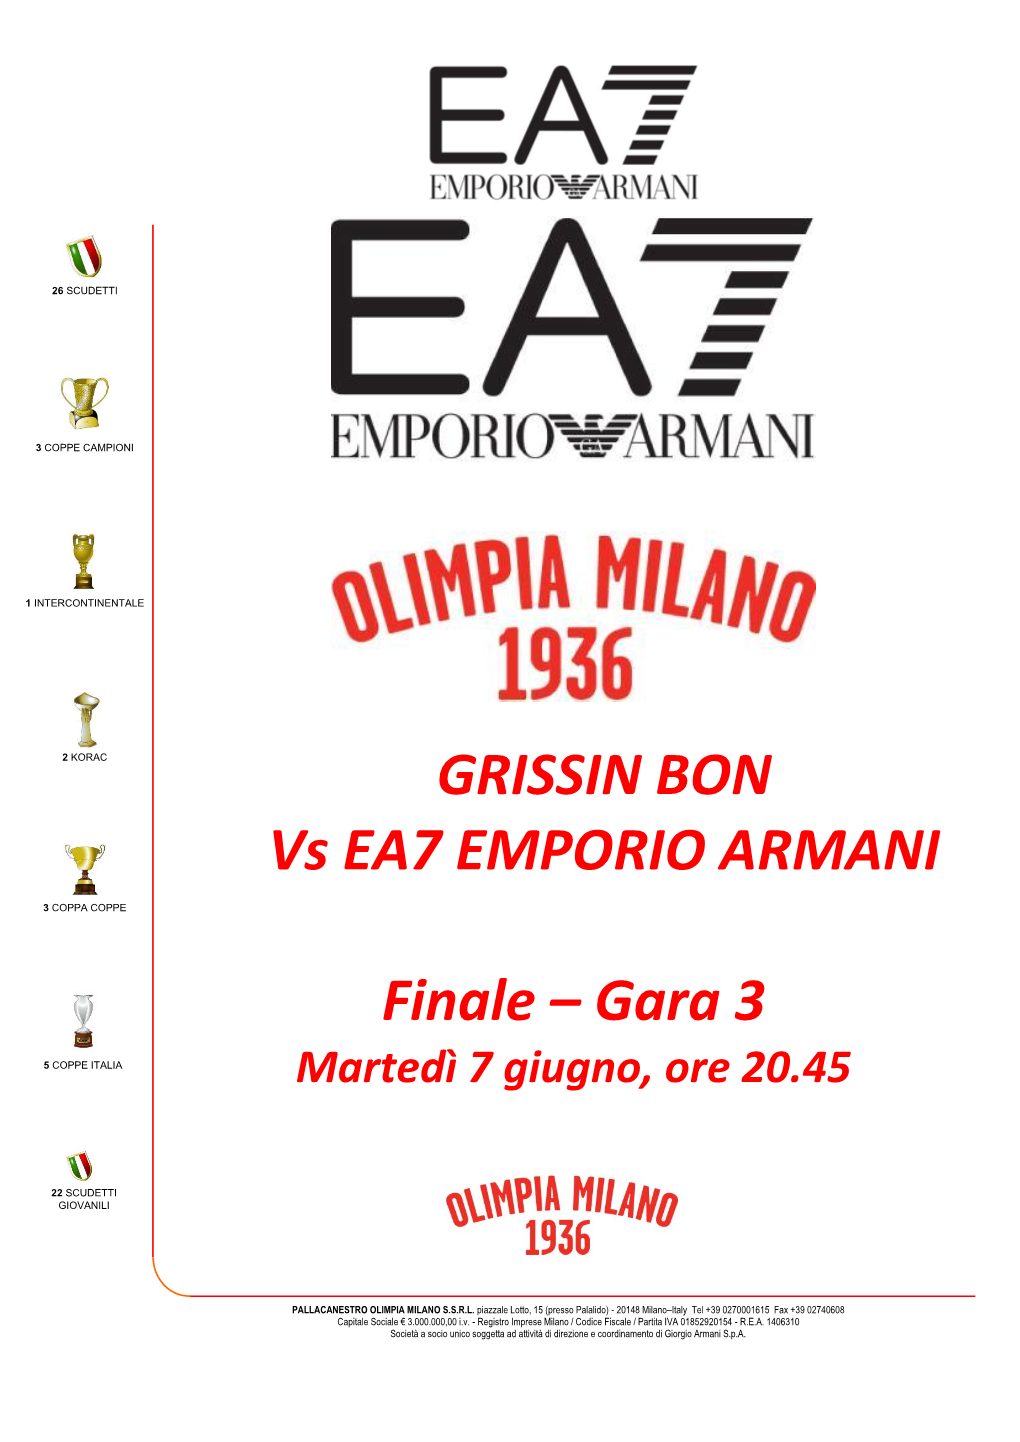 Reggio Emilia-EA7 Gara 3 Game Notes